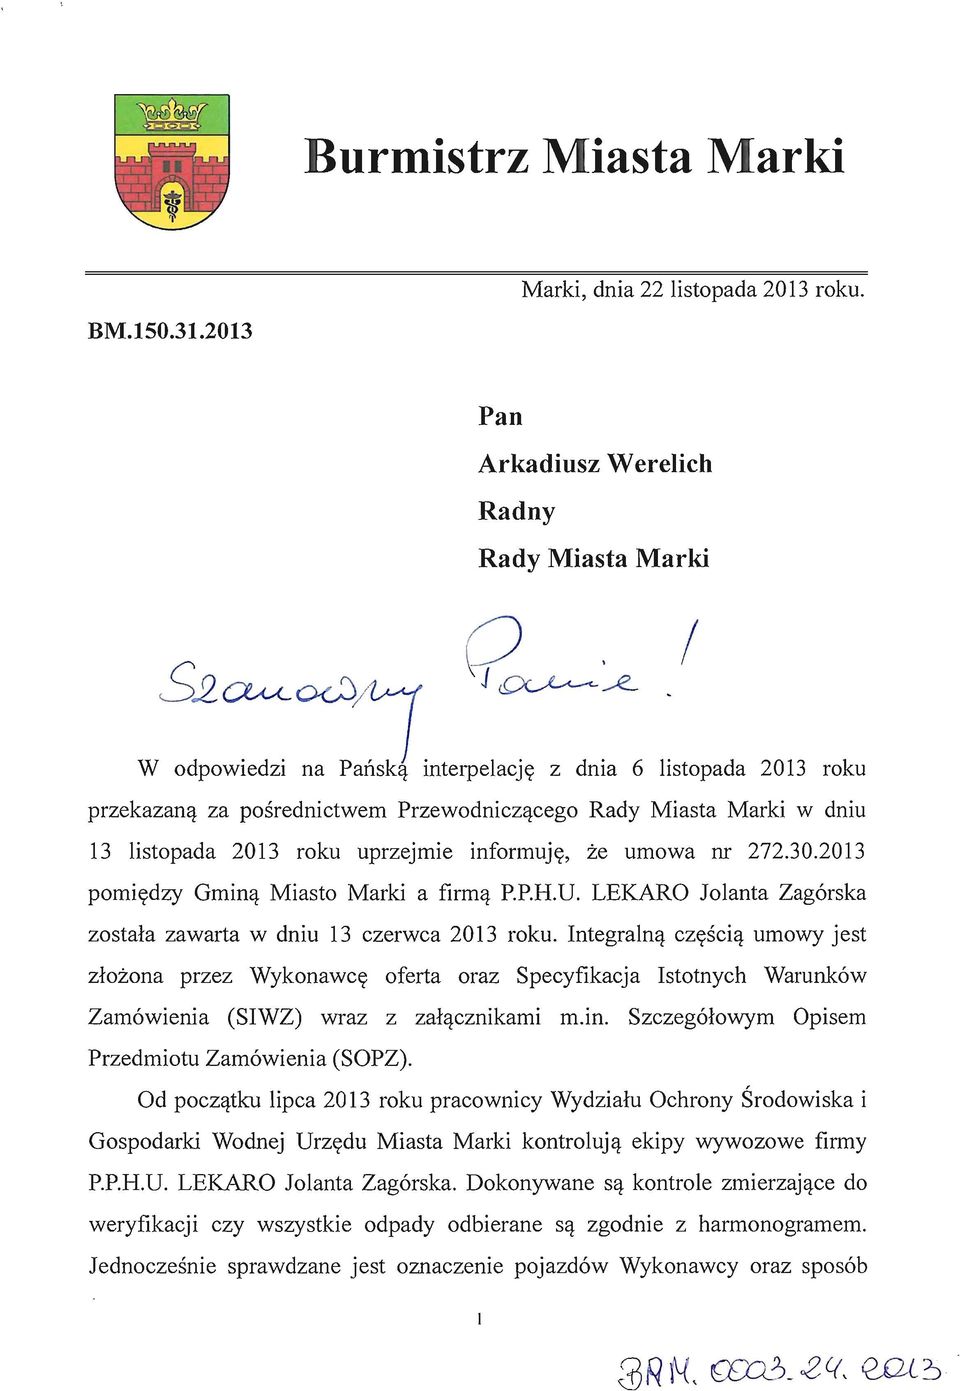 2013 porniedzy Gmina Miasto Marki a firma P.P.H.D. LEKARO Jolanta Zagorska zostala zawarta w dniu 13 czerwca 2013 roku.